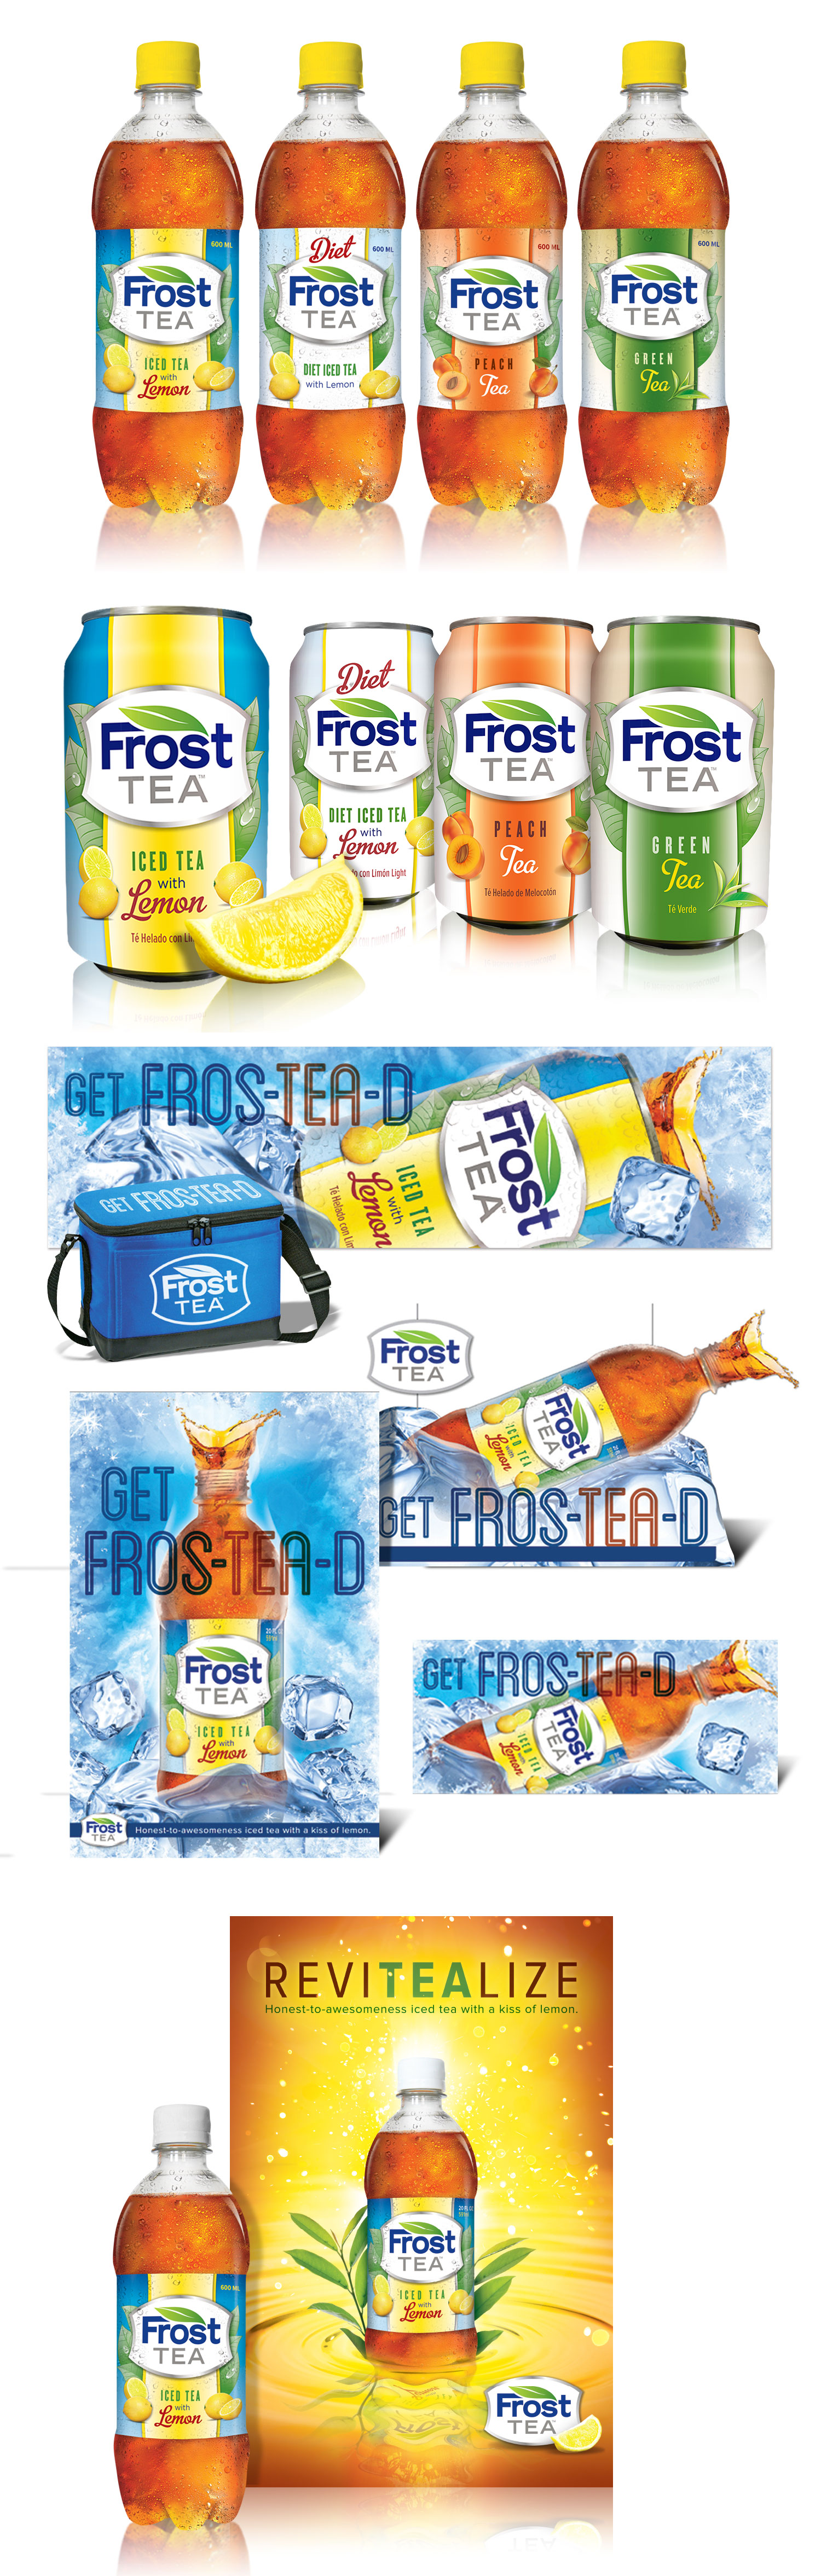 Frost Tea Packaging